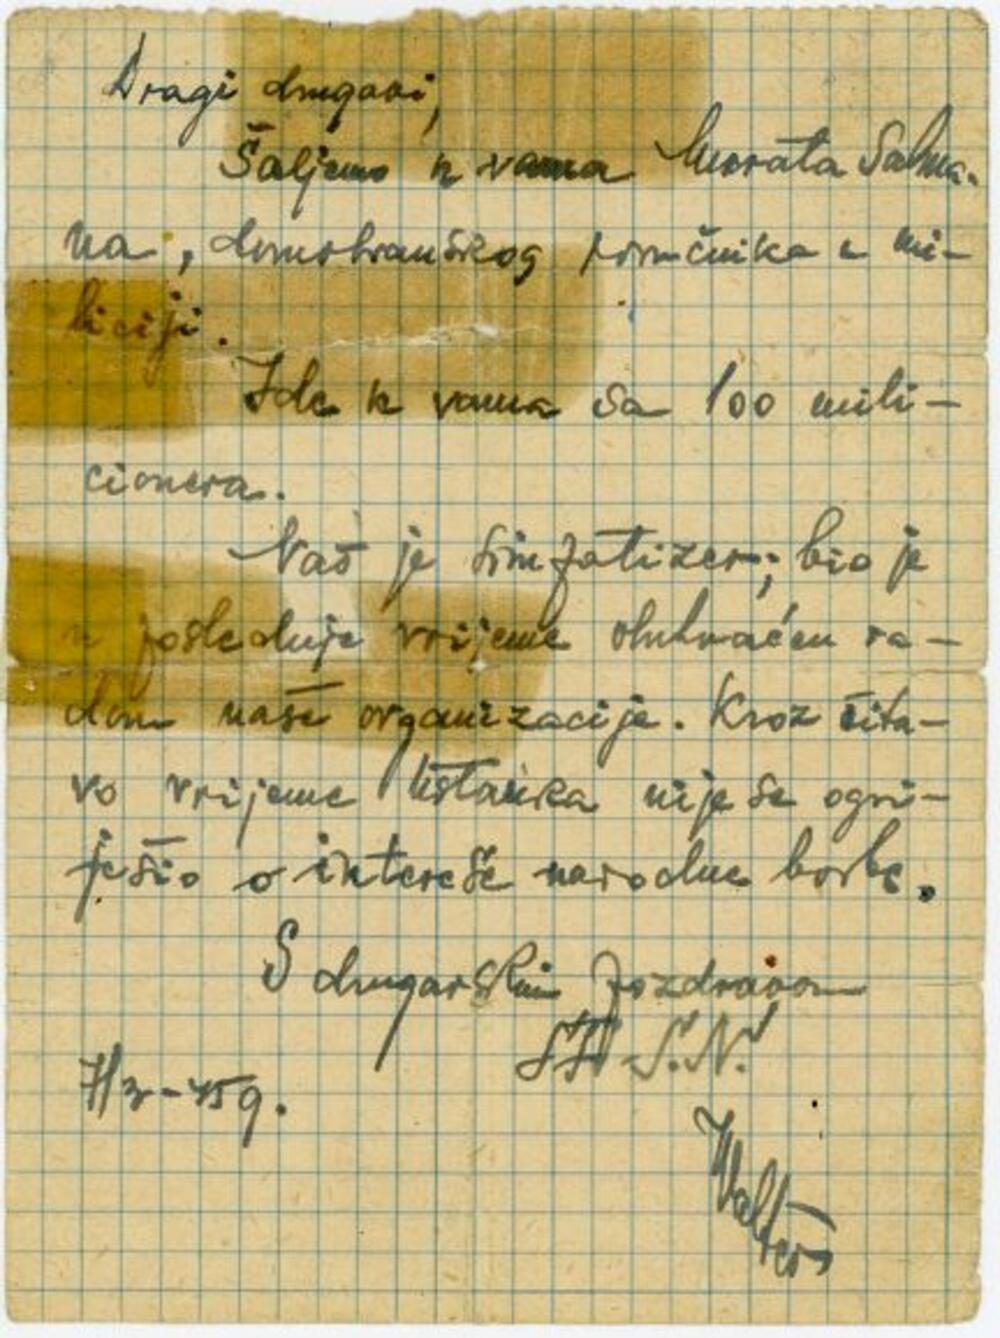 Valterovo pismo od 7. marta 1945. u kojem obaveštava partizansku jedinicu da im šalje Murata Salmana, domobranskog poručnika sa 100 milicionera. Inače, Salman je ranije bio Valterov obaveštajac